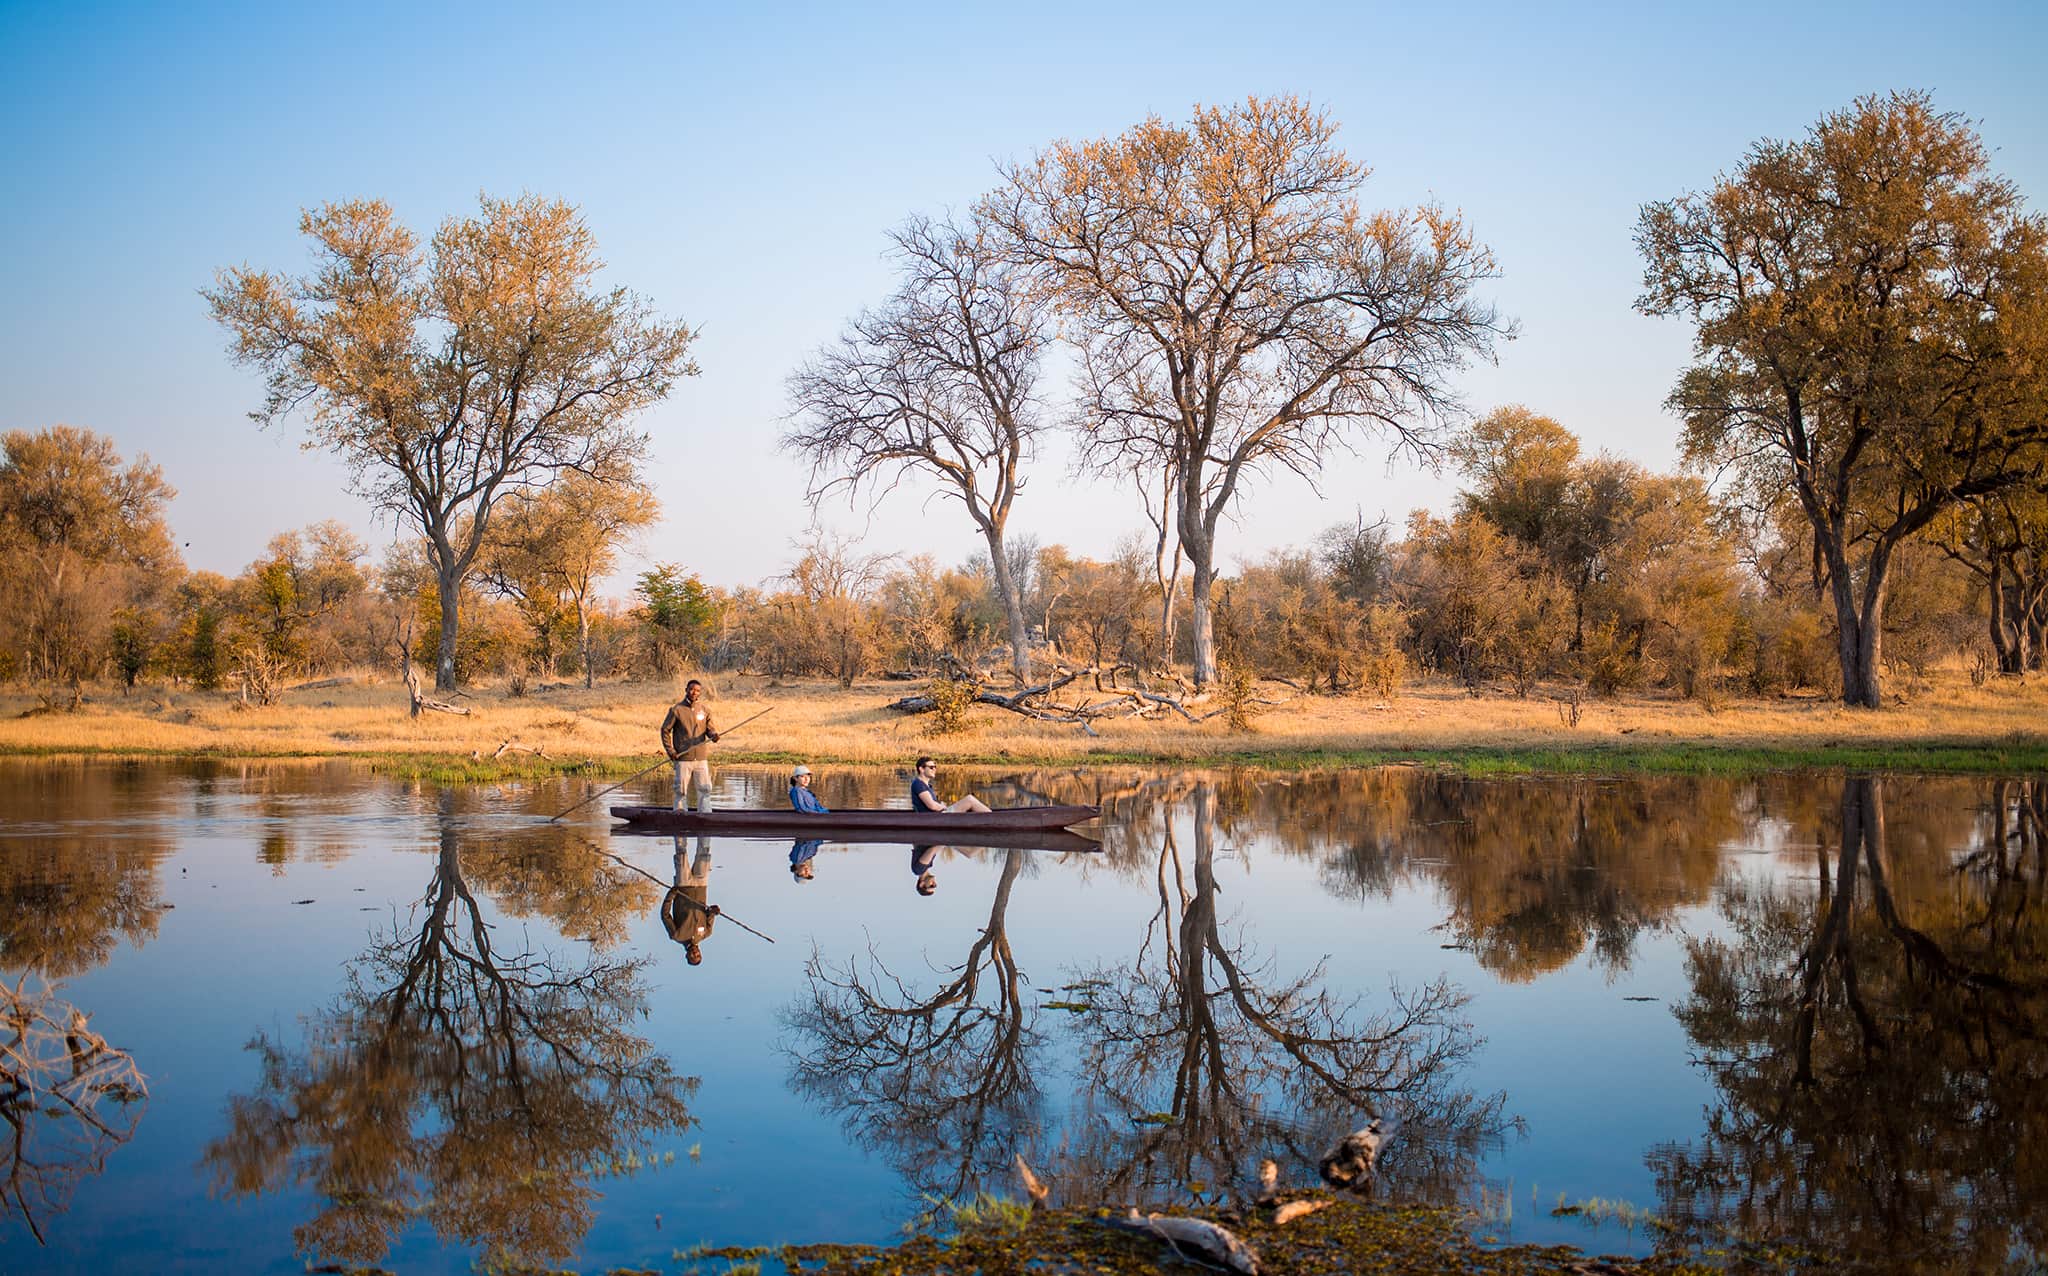 El invierno es un buen momento para el safari mokoro debido a las inundaciones en el delta del Okavango